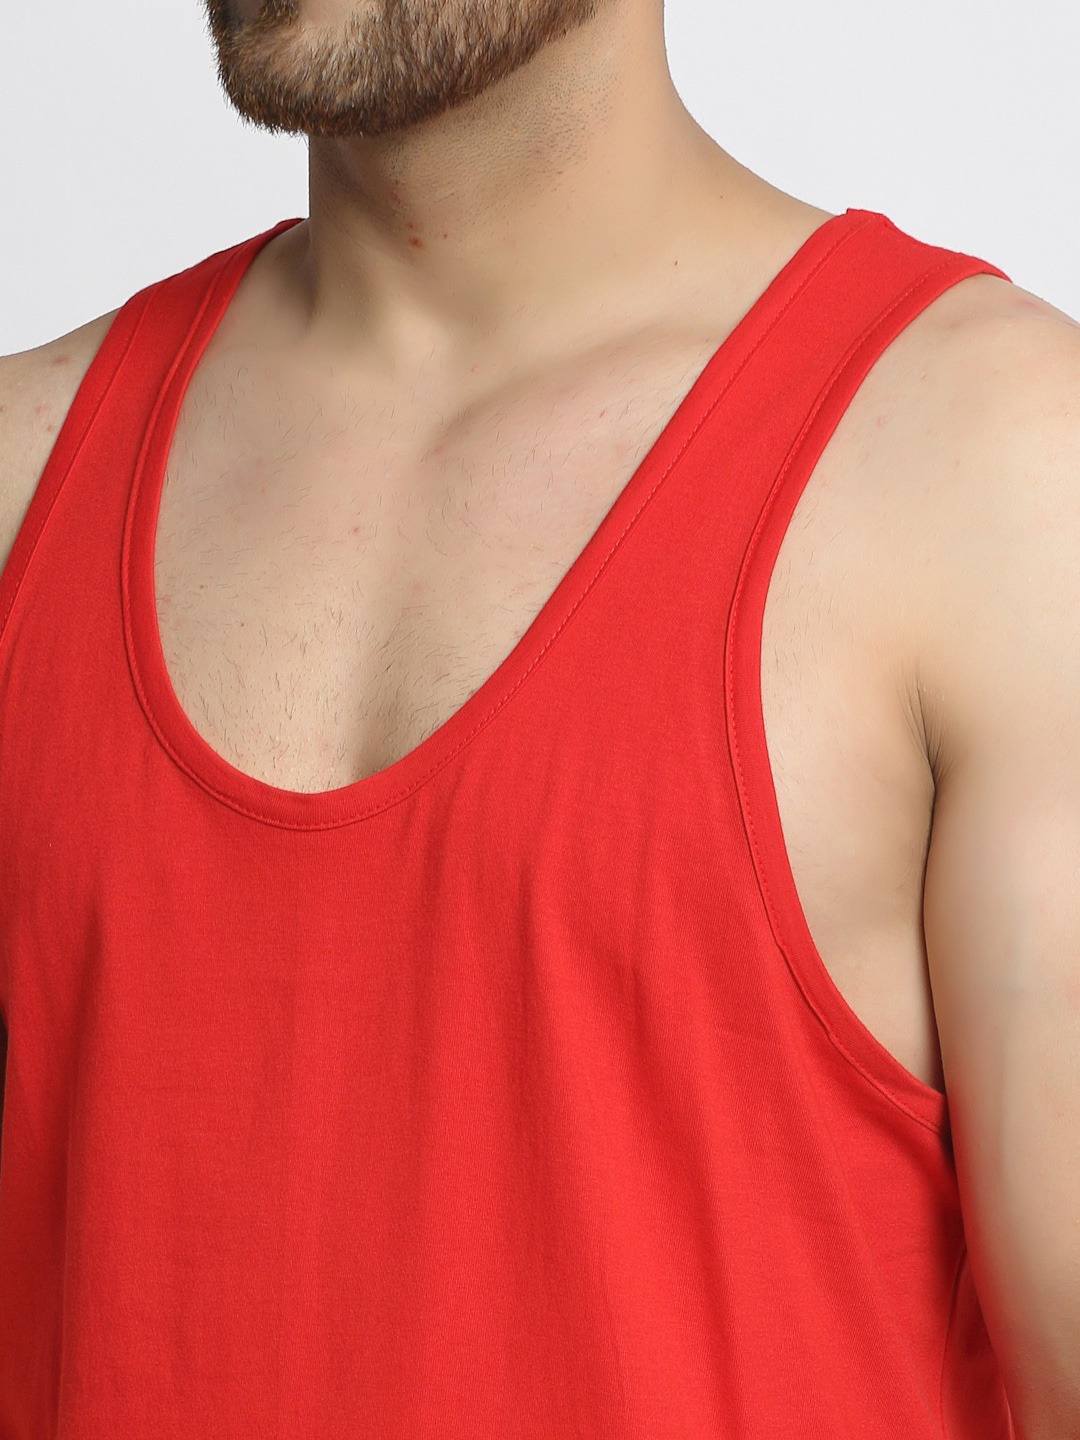 Clothing Innerwear Vests | Friskers Men Red Solid Gym Vest - JY55014